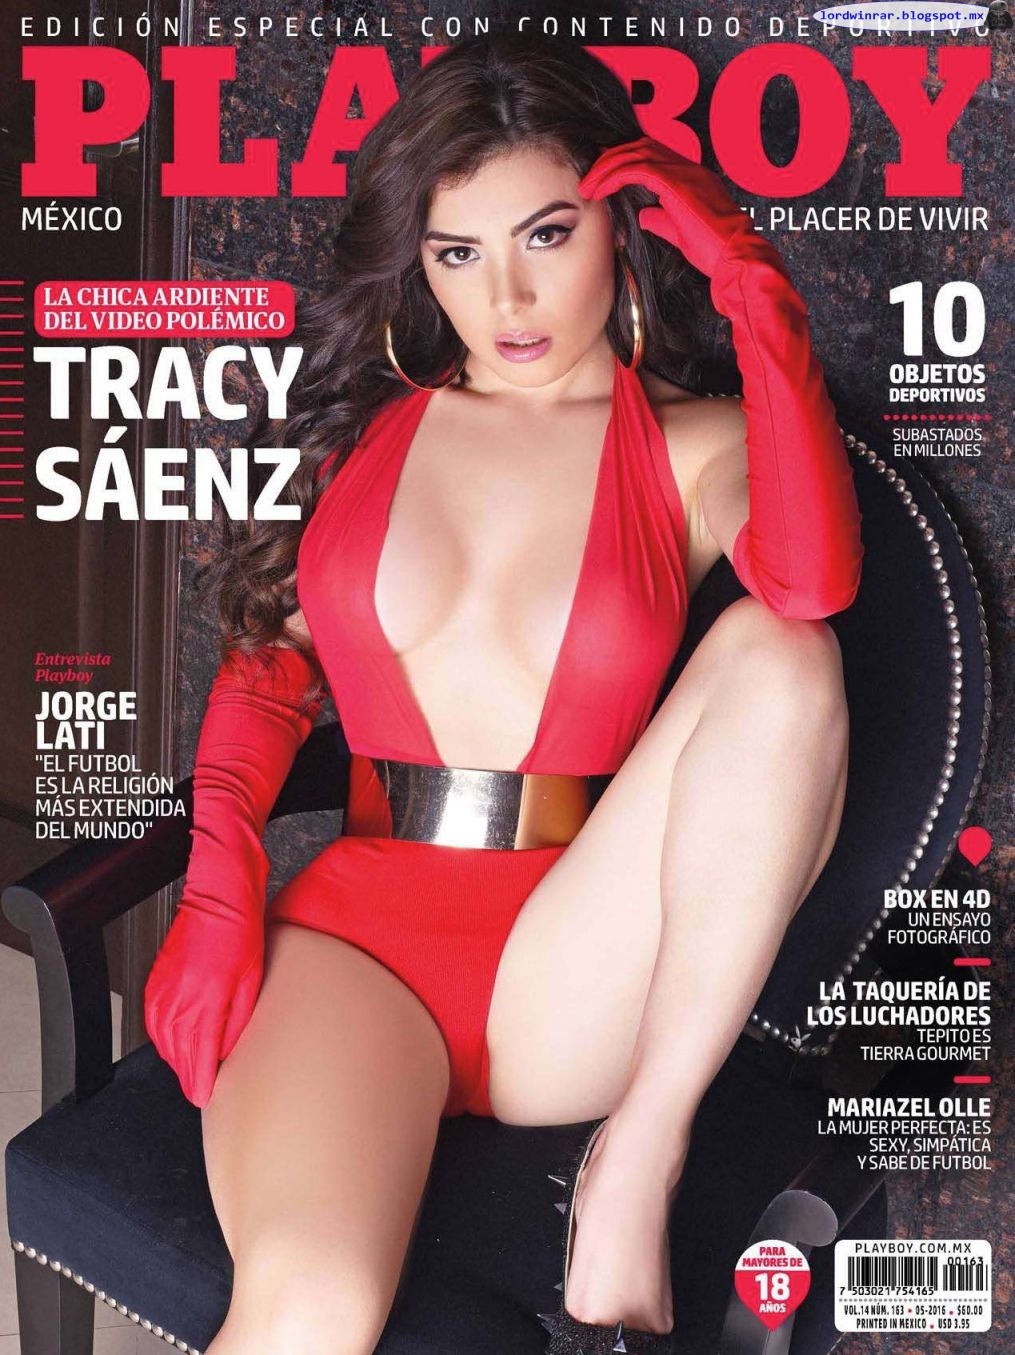   Tracy Saenz - Playboy Mexico 2016 Mayo (42 Fotos HQ)Tracy Saenz desnuda en la revista